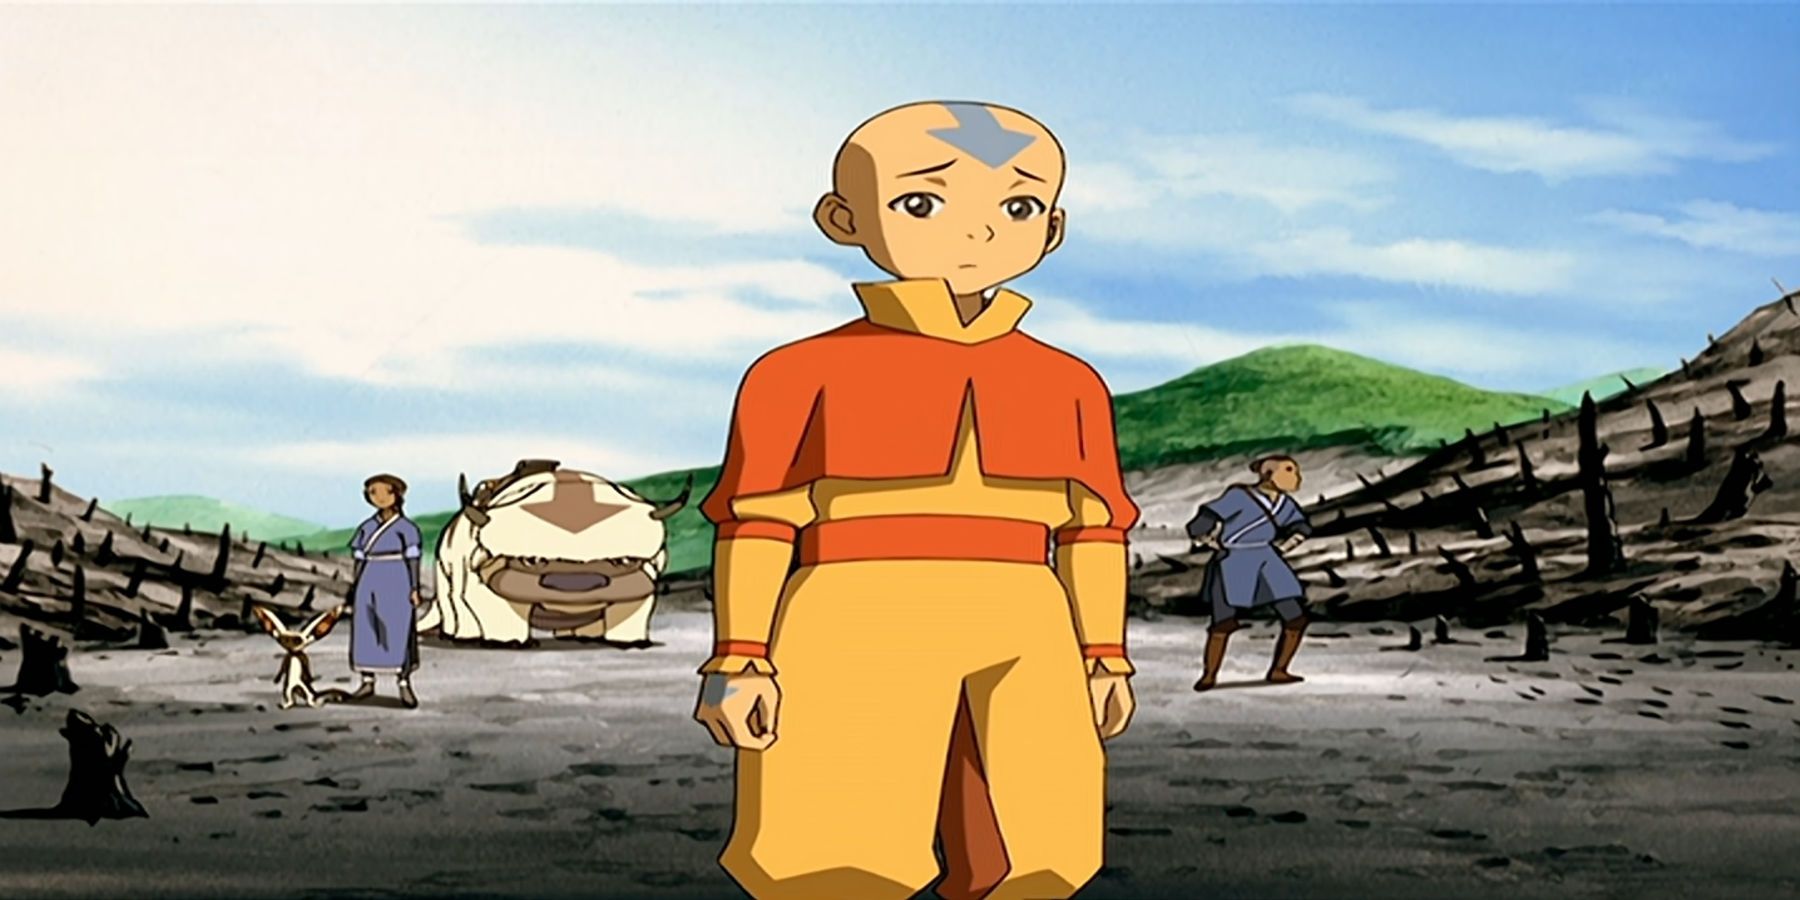 Aang in Avatar the Last Airbender